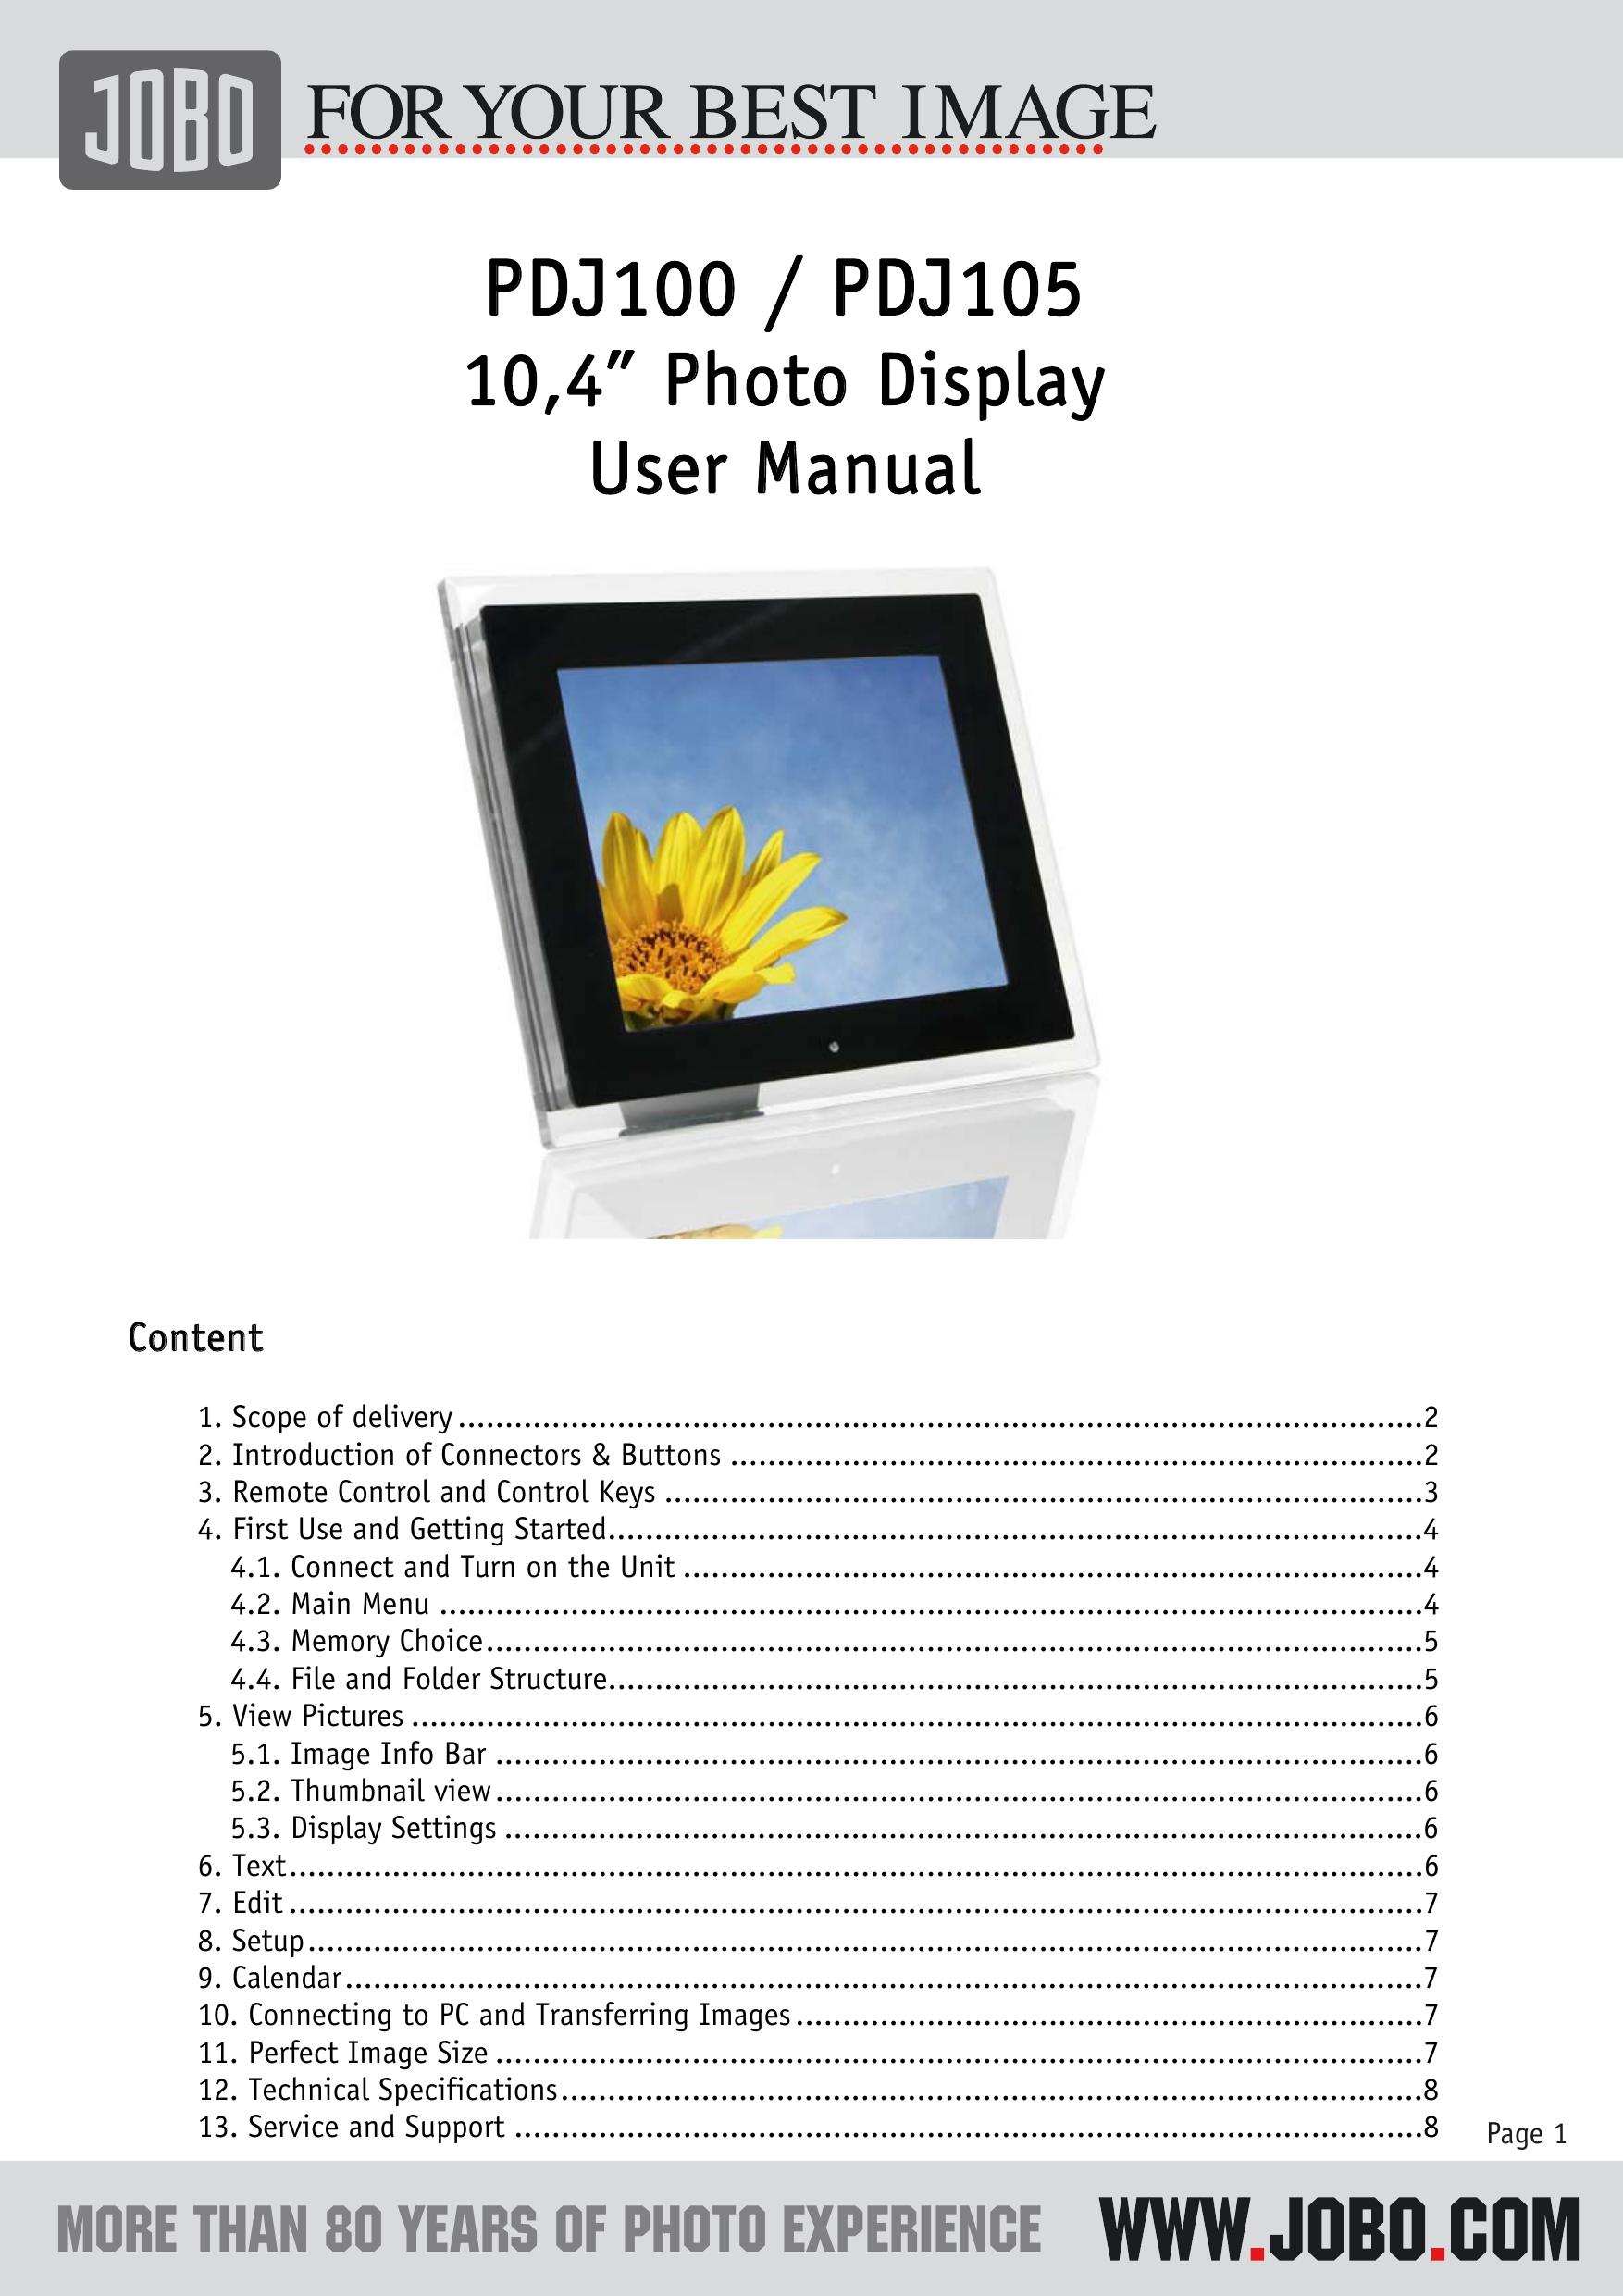 JOBO PDJ105 Digital Photo Frame User Manual